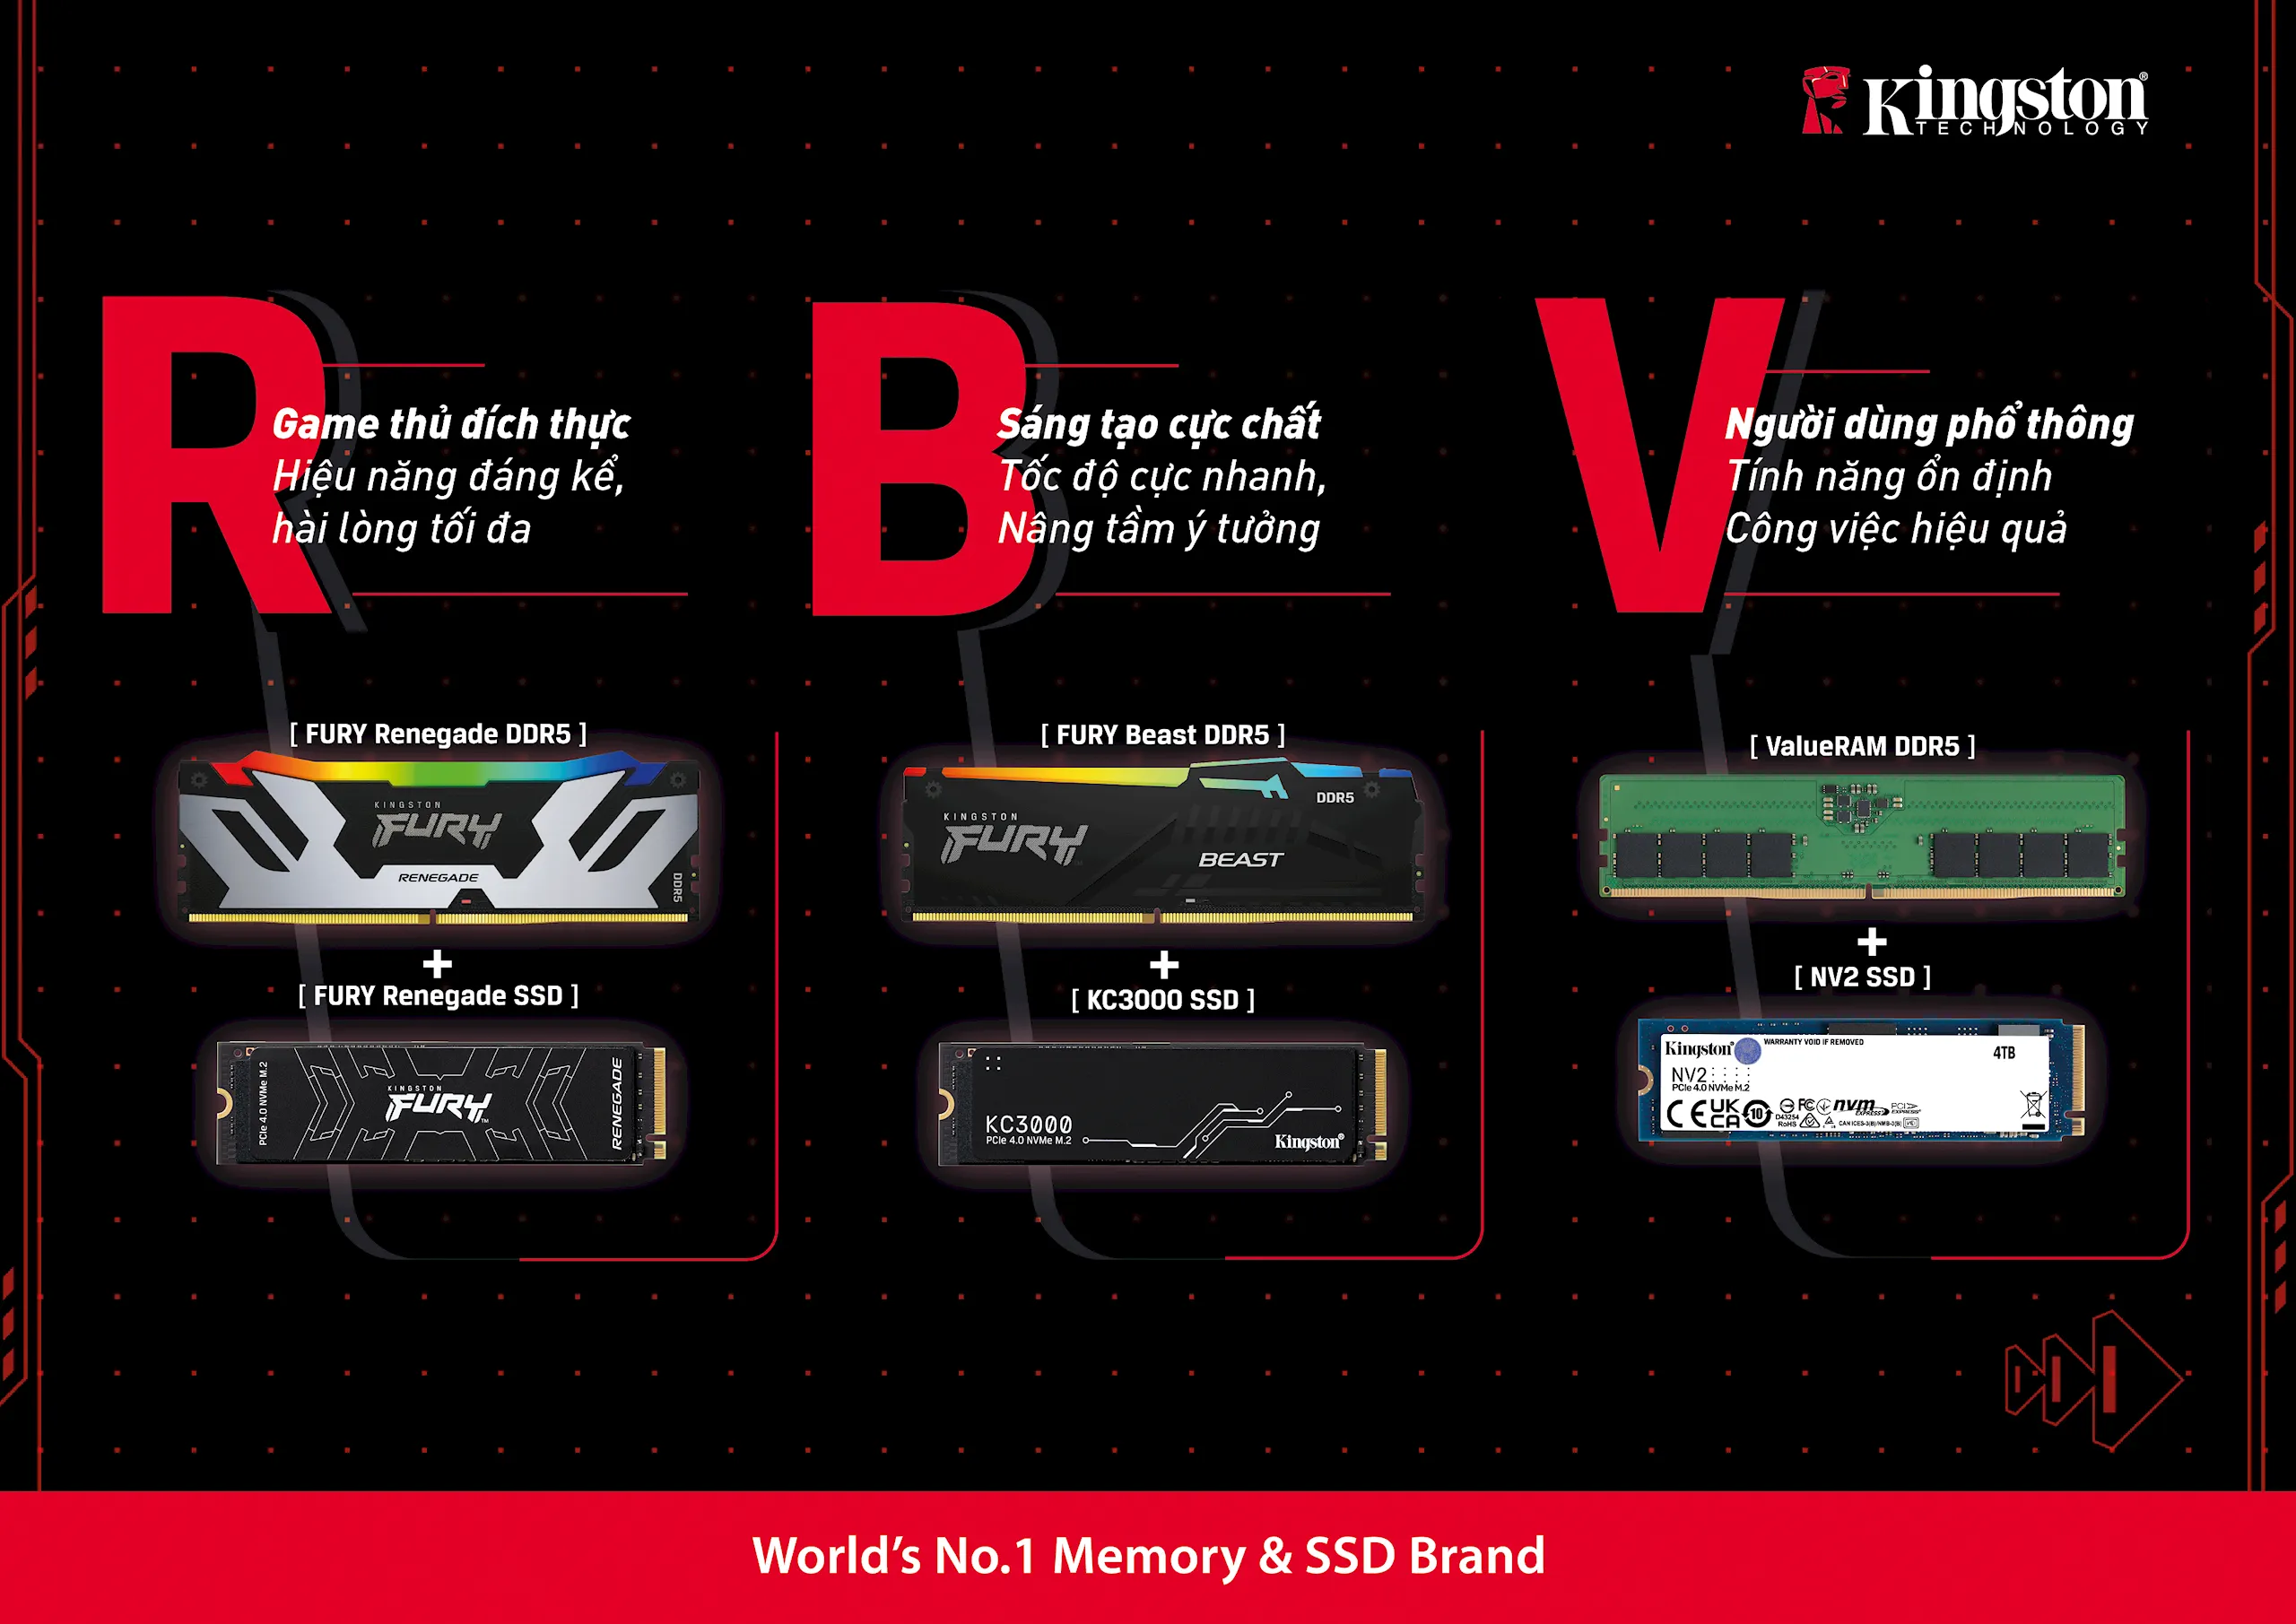 Kingston ra mắt giải pháp RBV – bộ đôi RAM và SSD tối ưu cho game thủ và người sáng tạo nội dung